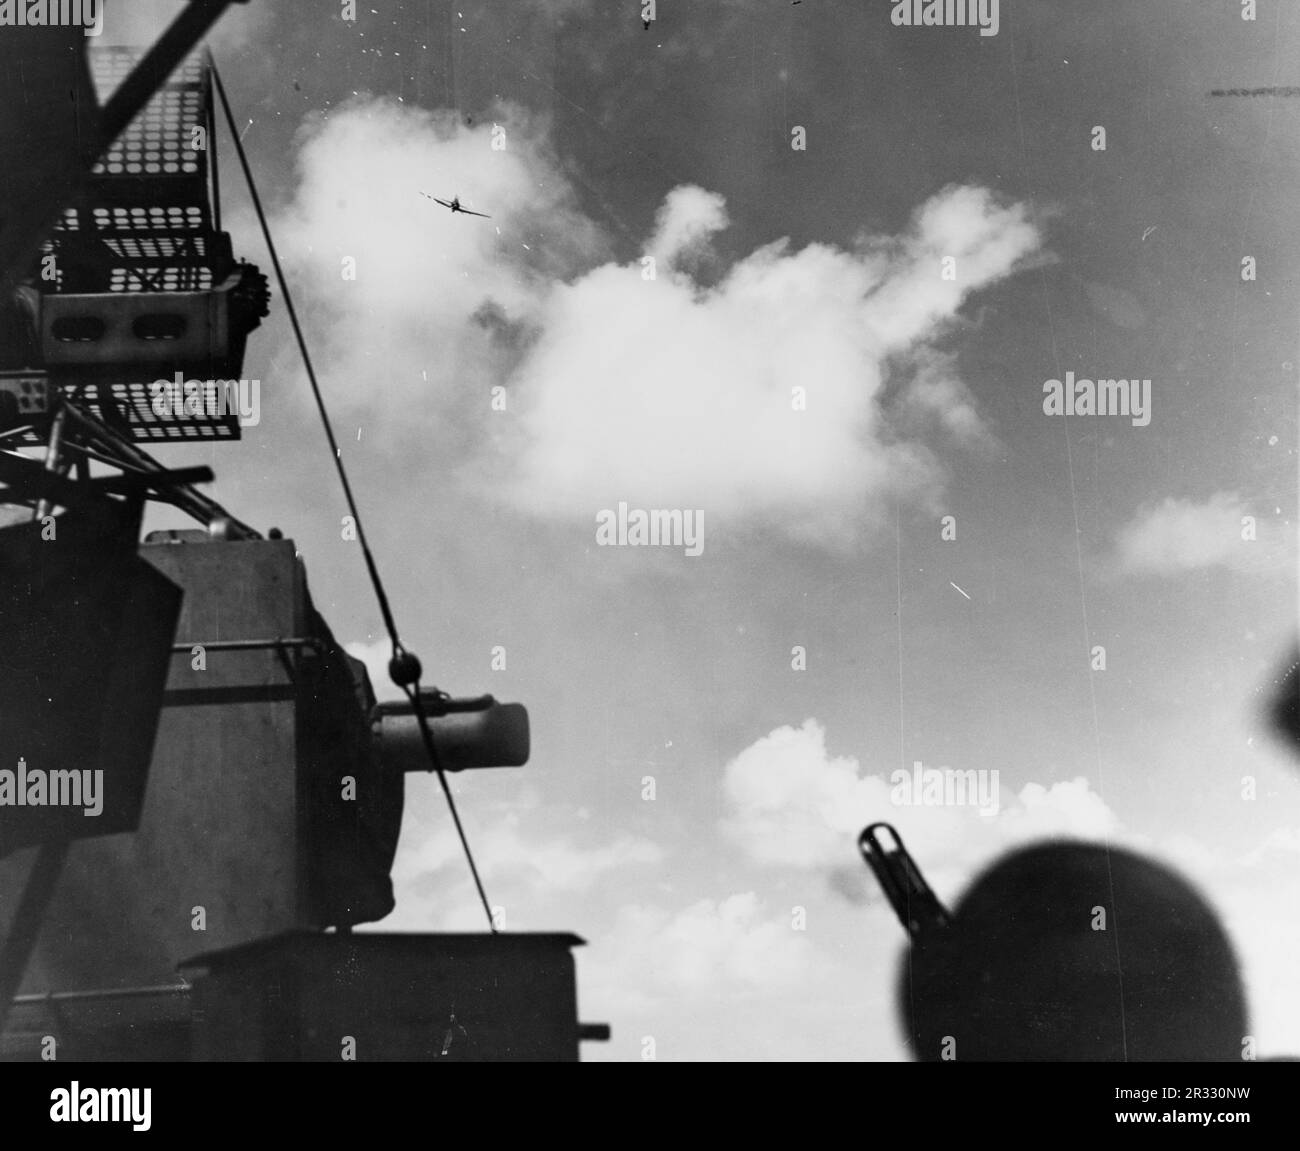 Mitsubishi A6M plongée Zero Kamikaze sur USS Lexington (CV-16) 5 novembre 1944. Lorsque le Japon était confronté à la défaite de fin 1944, il a choisi de détruire des navires américains par des attentats-suicides, connus sous le nom de Kamikaze.ces attaques étaient une arme physique et psychologique puissante et ont coulé un total de 47 navires pour un coût de plus de 3000 pilotes et avions. À la fin de 1944, la marine américaine était suffisamment importante pour que les pertes soient insignifiantes et qu’elles n’aient pas modifié le cours de la guerre. Banque D'Images